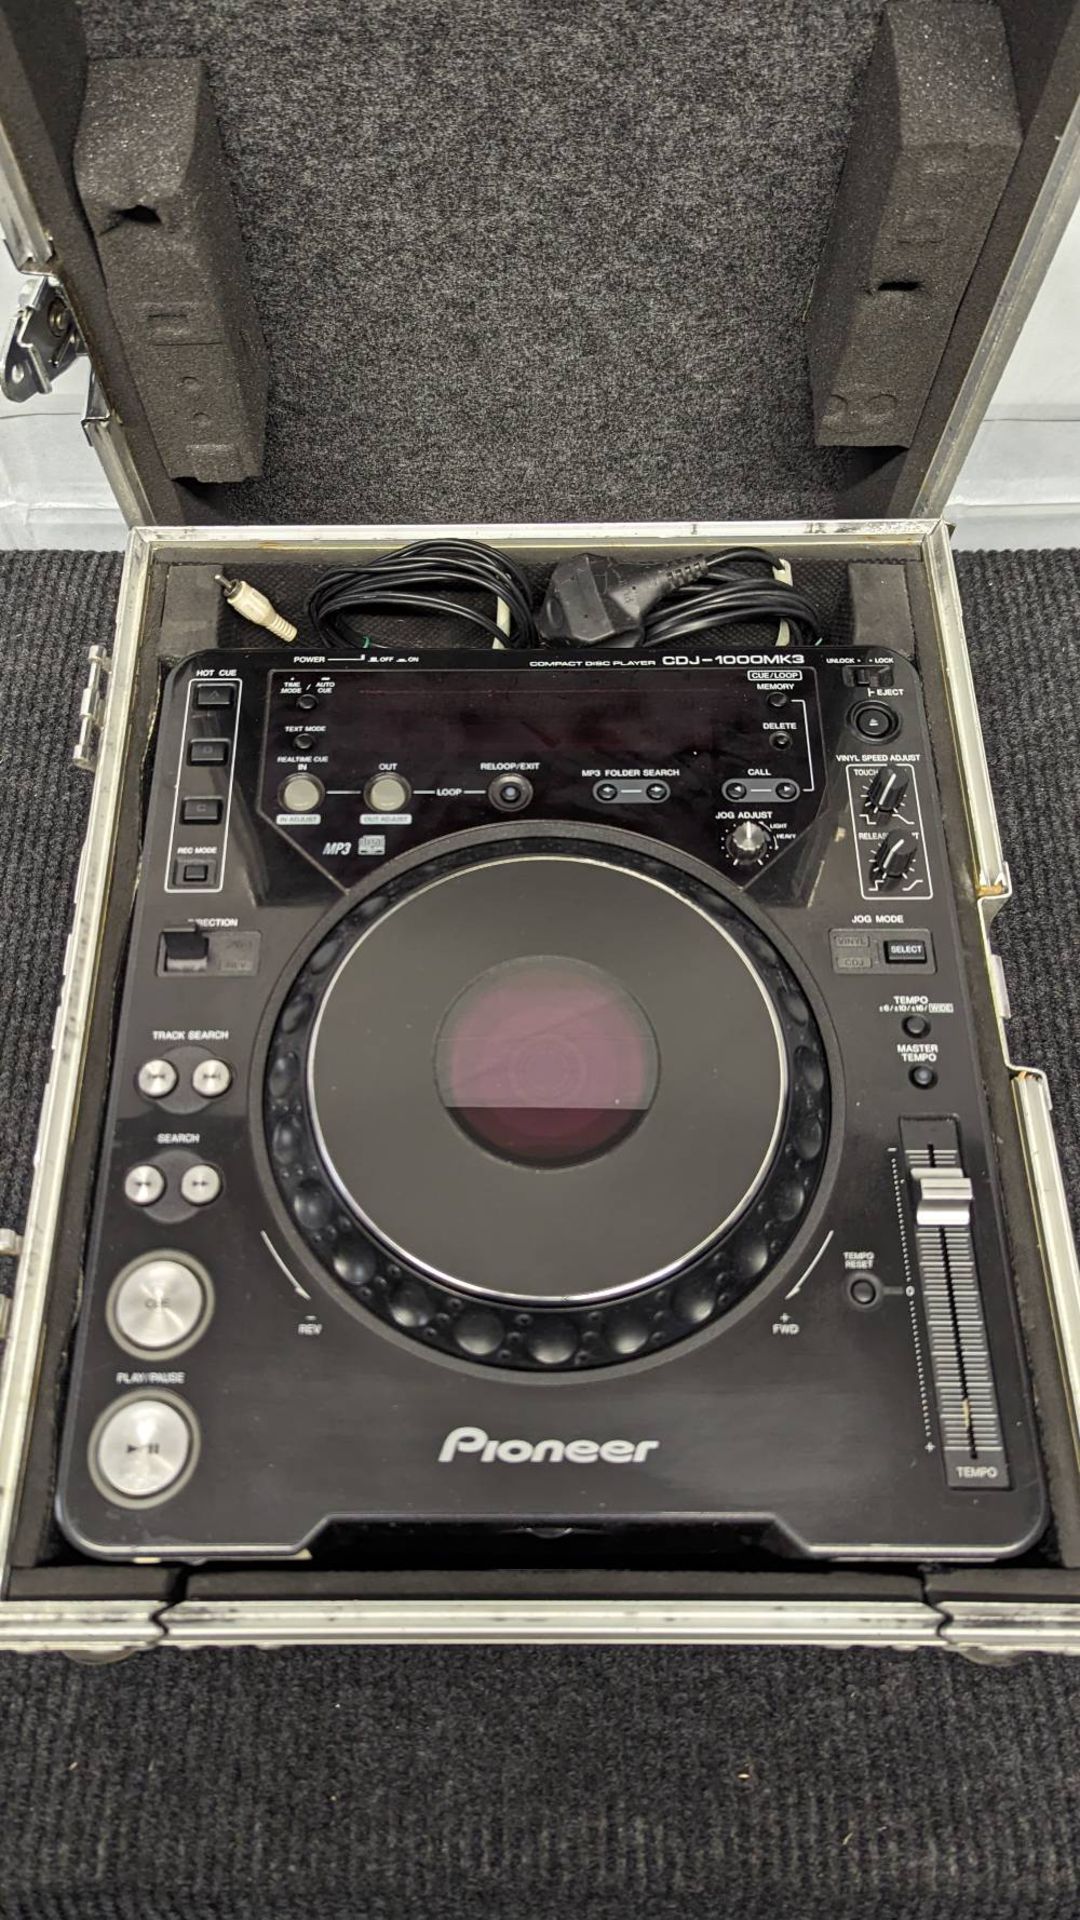 Pioneer CDJ1000 MK3 Digital DJ Deck - Image 2 of 4